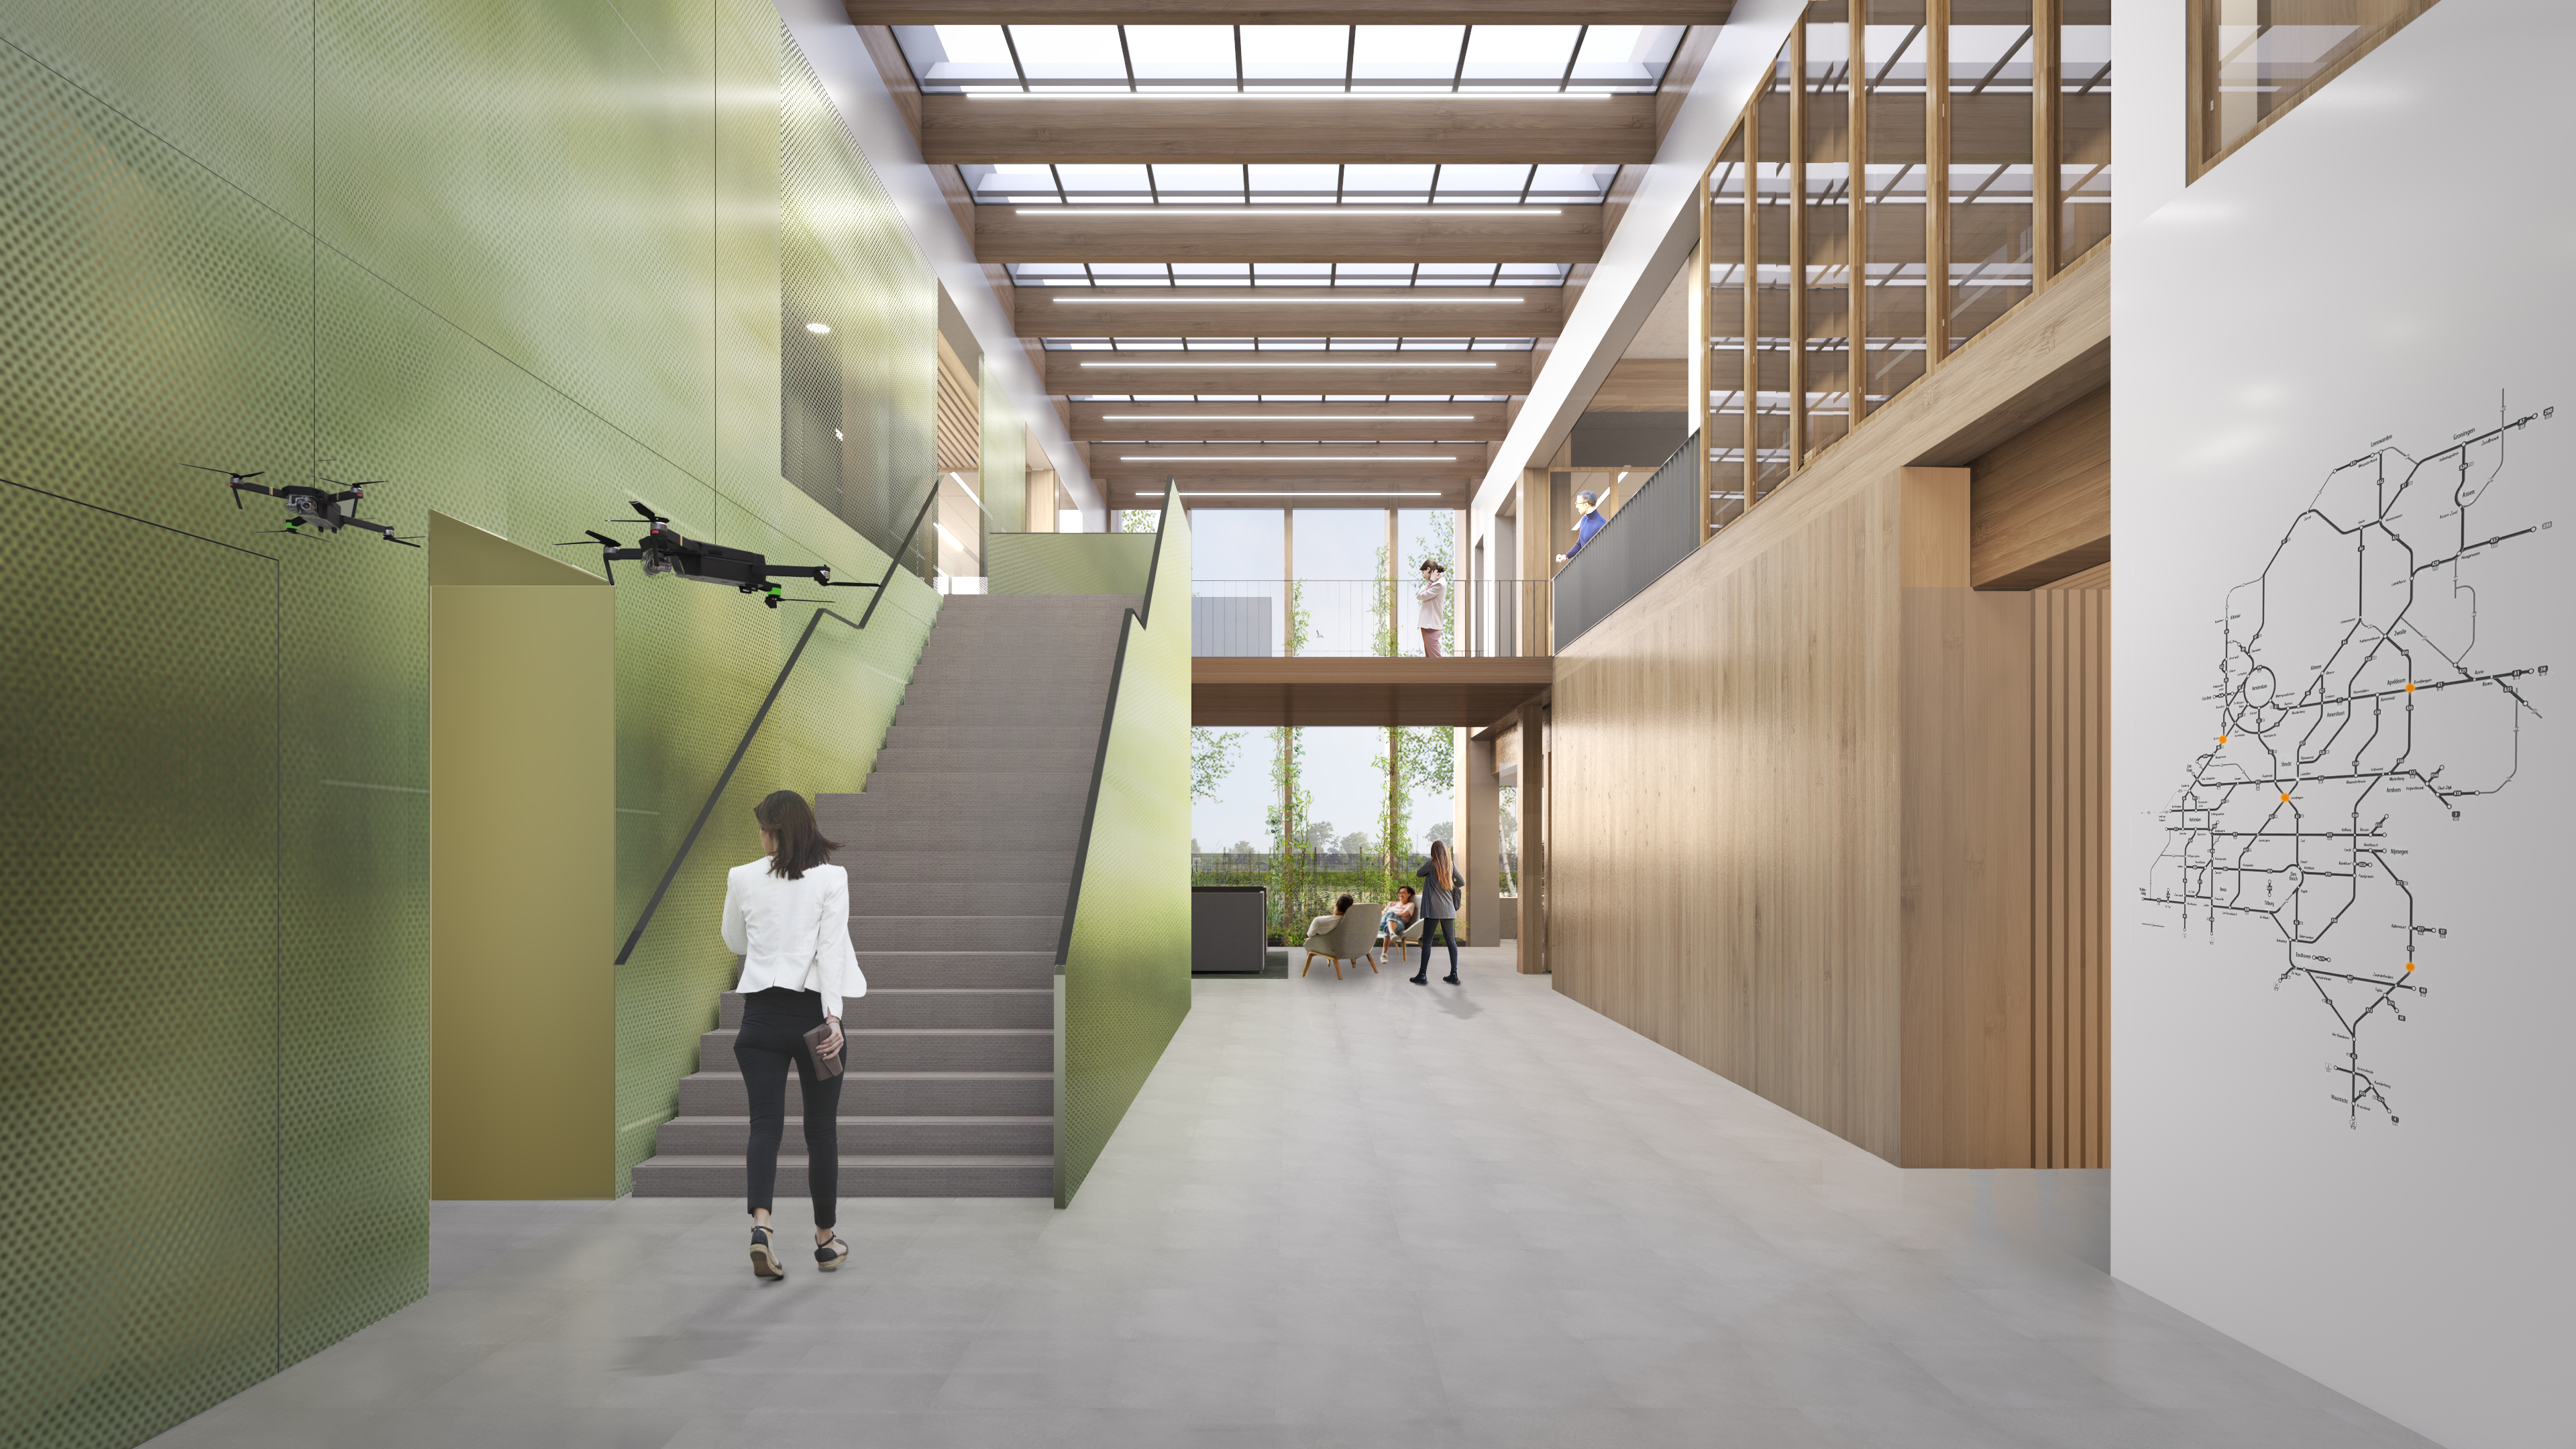 Studio PROTOTYPE ontwerpt nieuwbouw voor DV&O Zaanstad